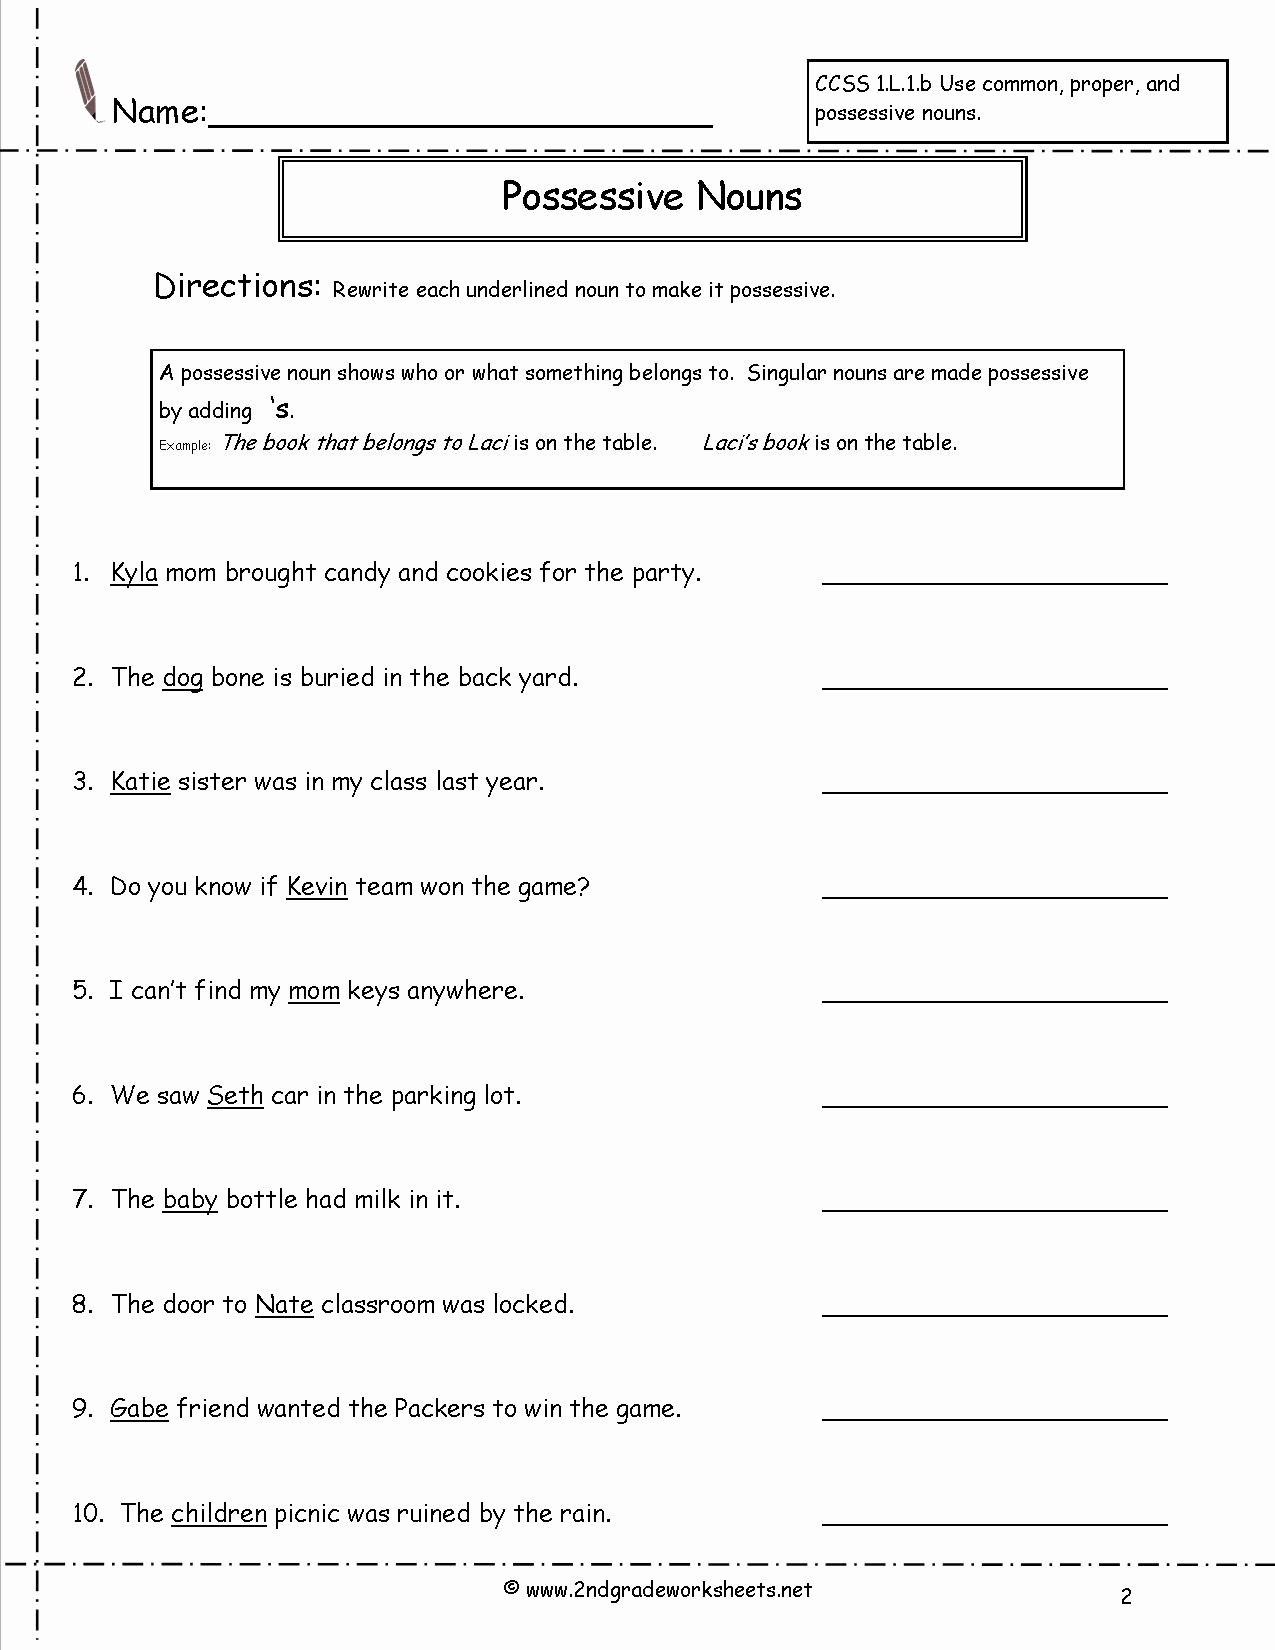 Possessive Pronouns Worksheet 3rd Grade Lovely Possessive Pronouns Worksheet 3rd Grade